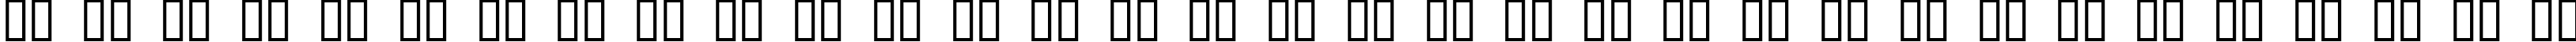 Пример написания русского алфавита шрифтом URAL 3d